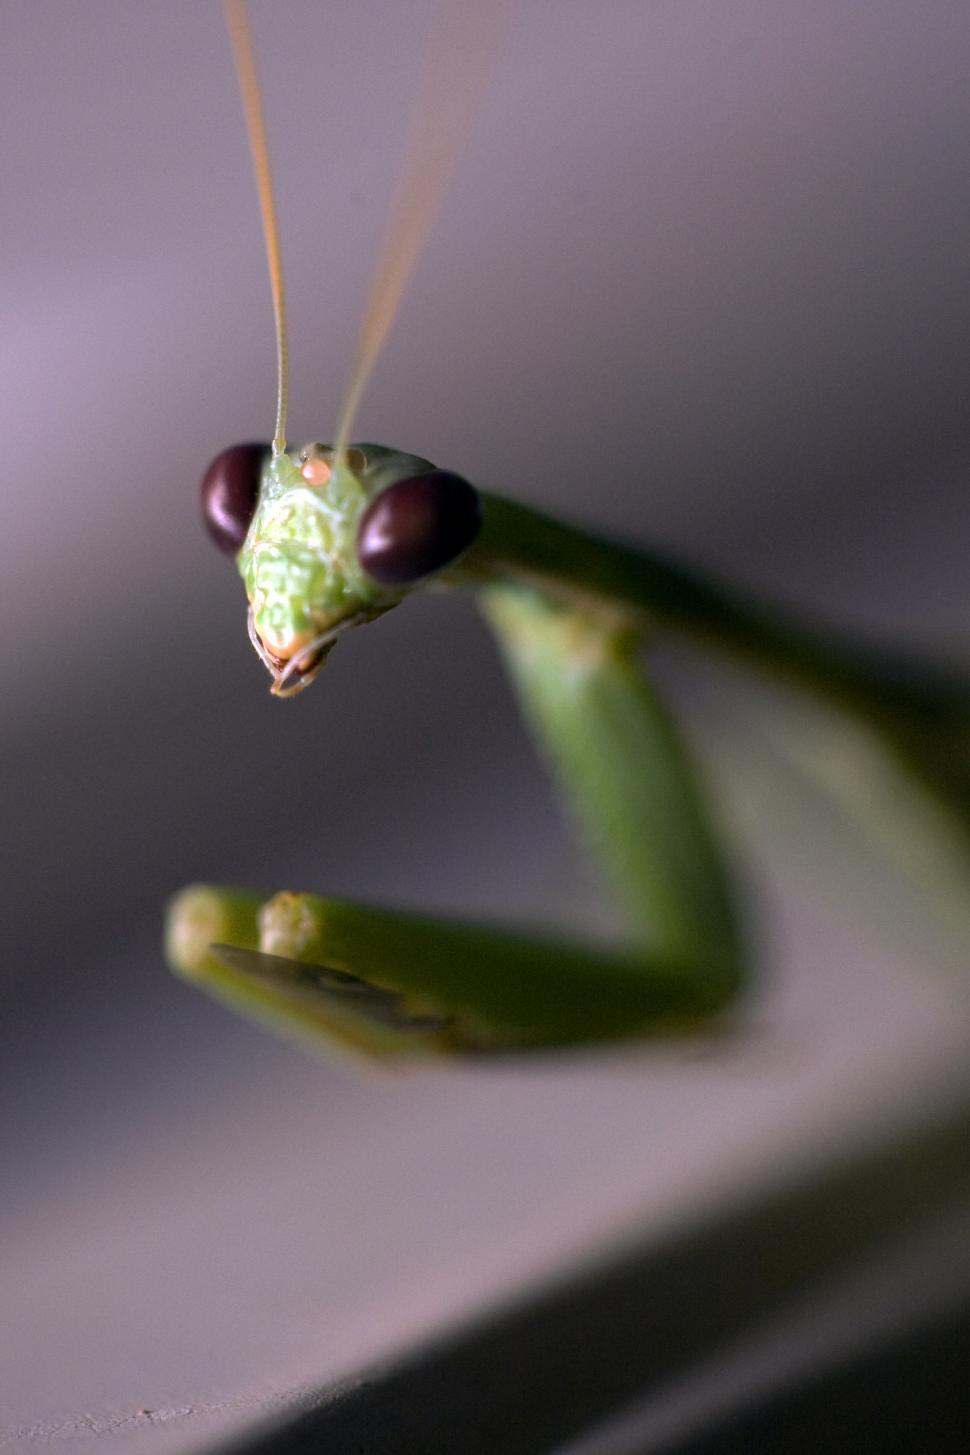 Free Image of praying mantis 